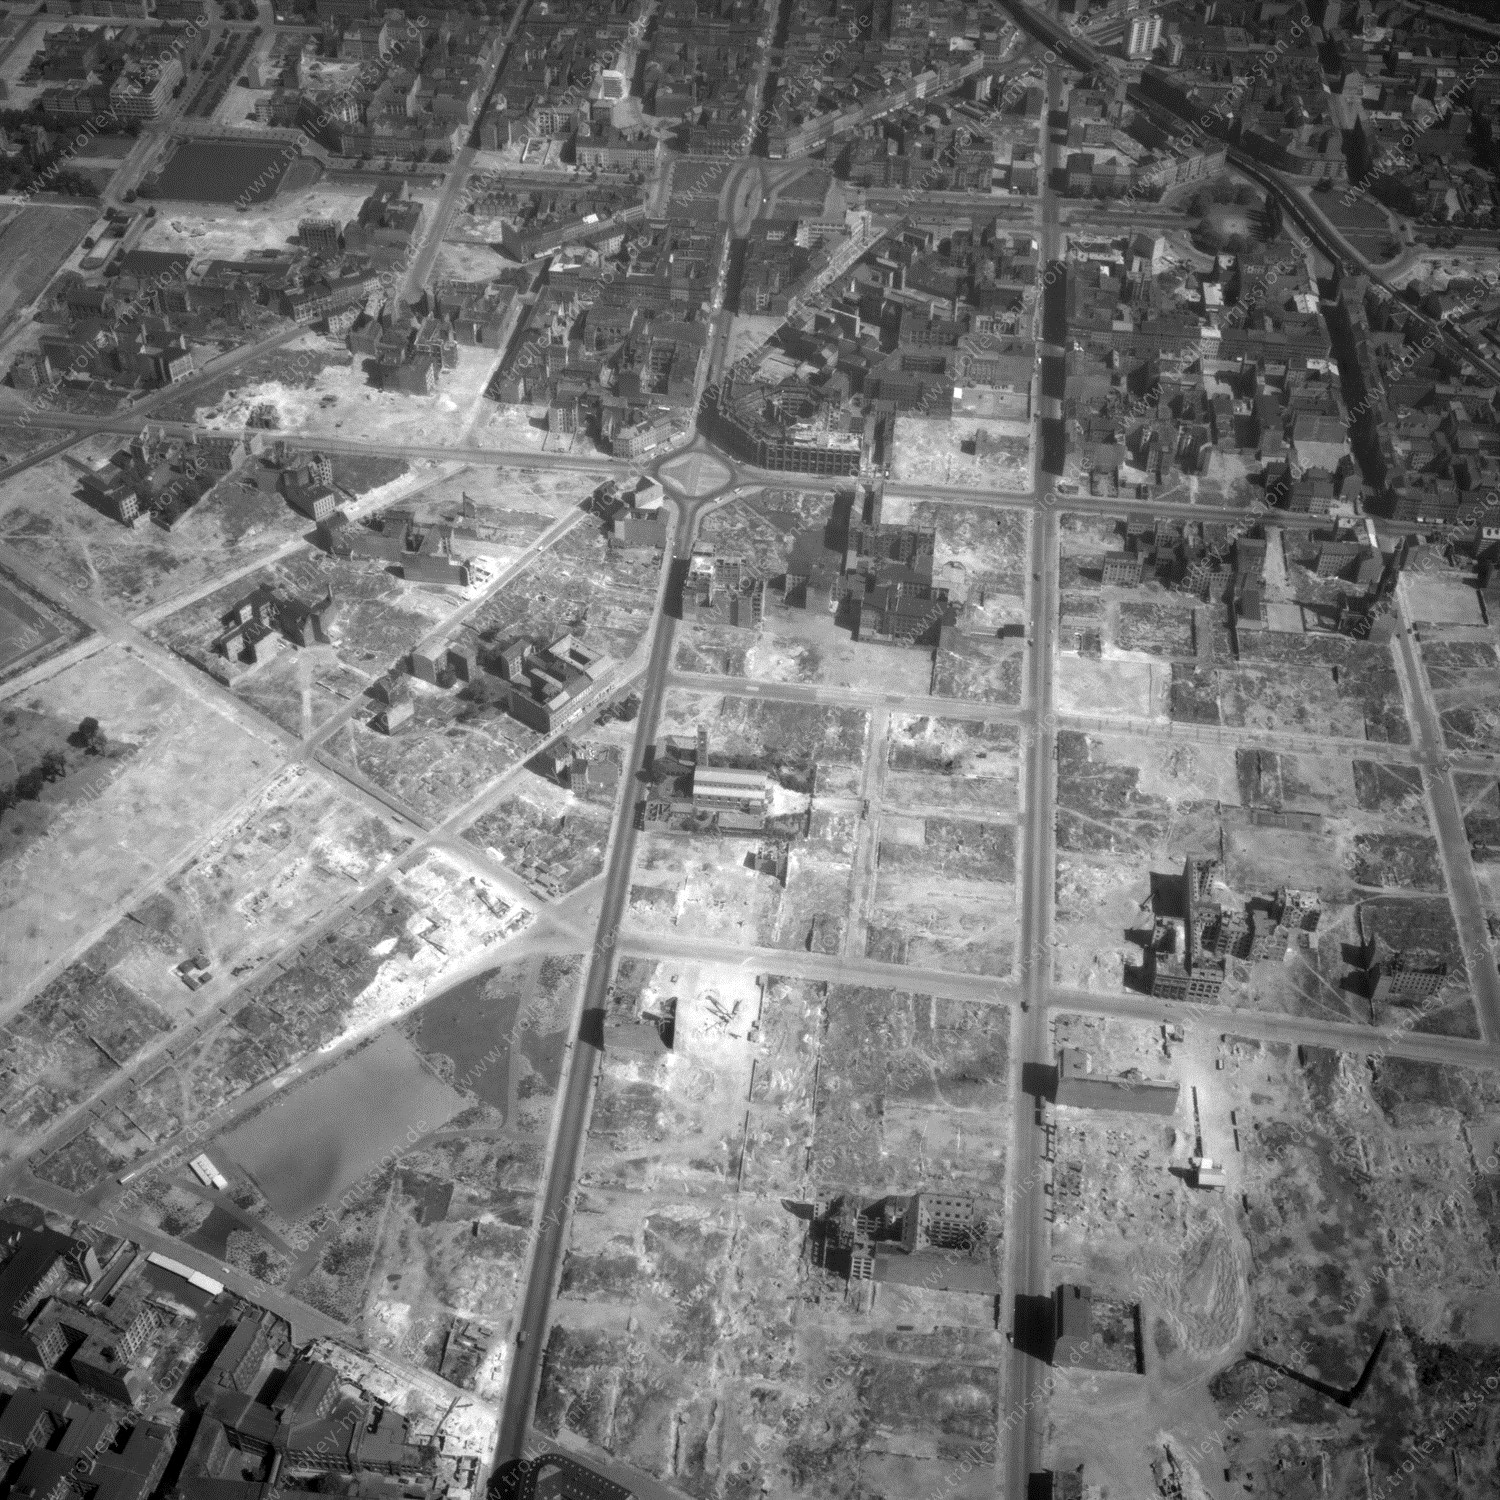 Alte Fotos und Luftbilder von Berlin - Luftbildaufnahme Nr. 10 - Historische Luftaufnahmen von West-Berlin aus dem Jahr 1954 - Flugstrecke Kilo